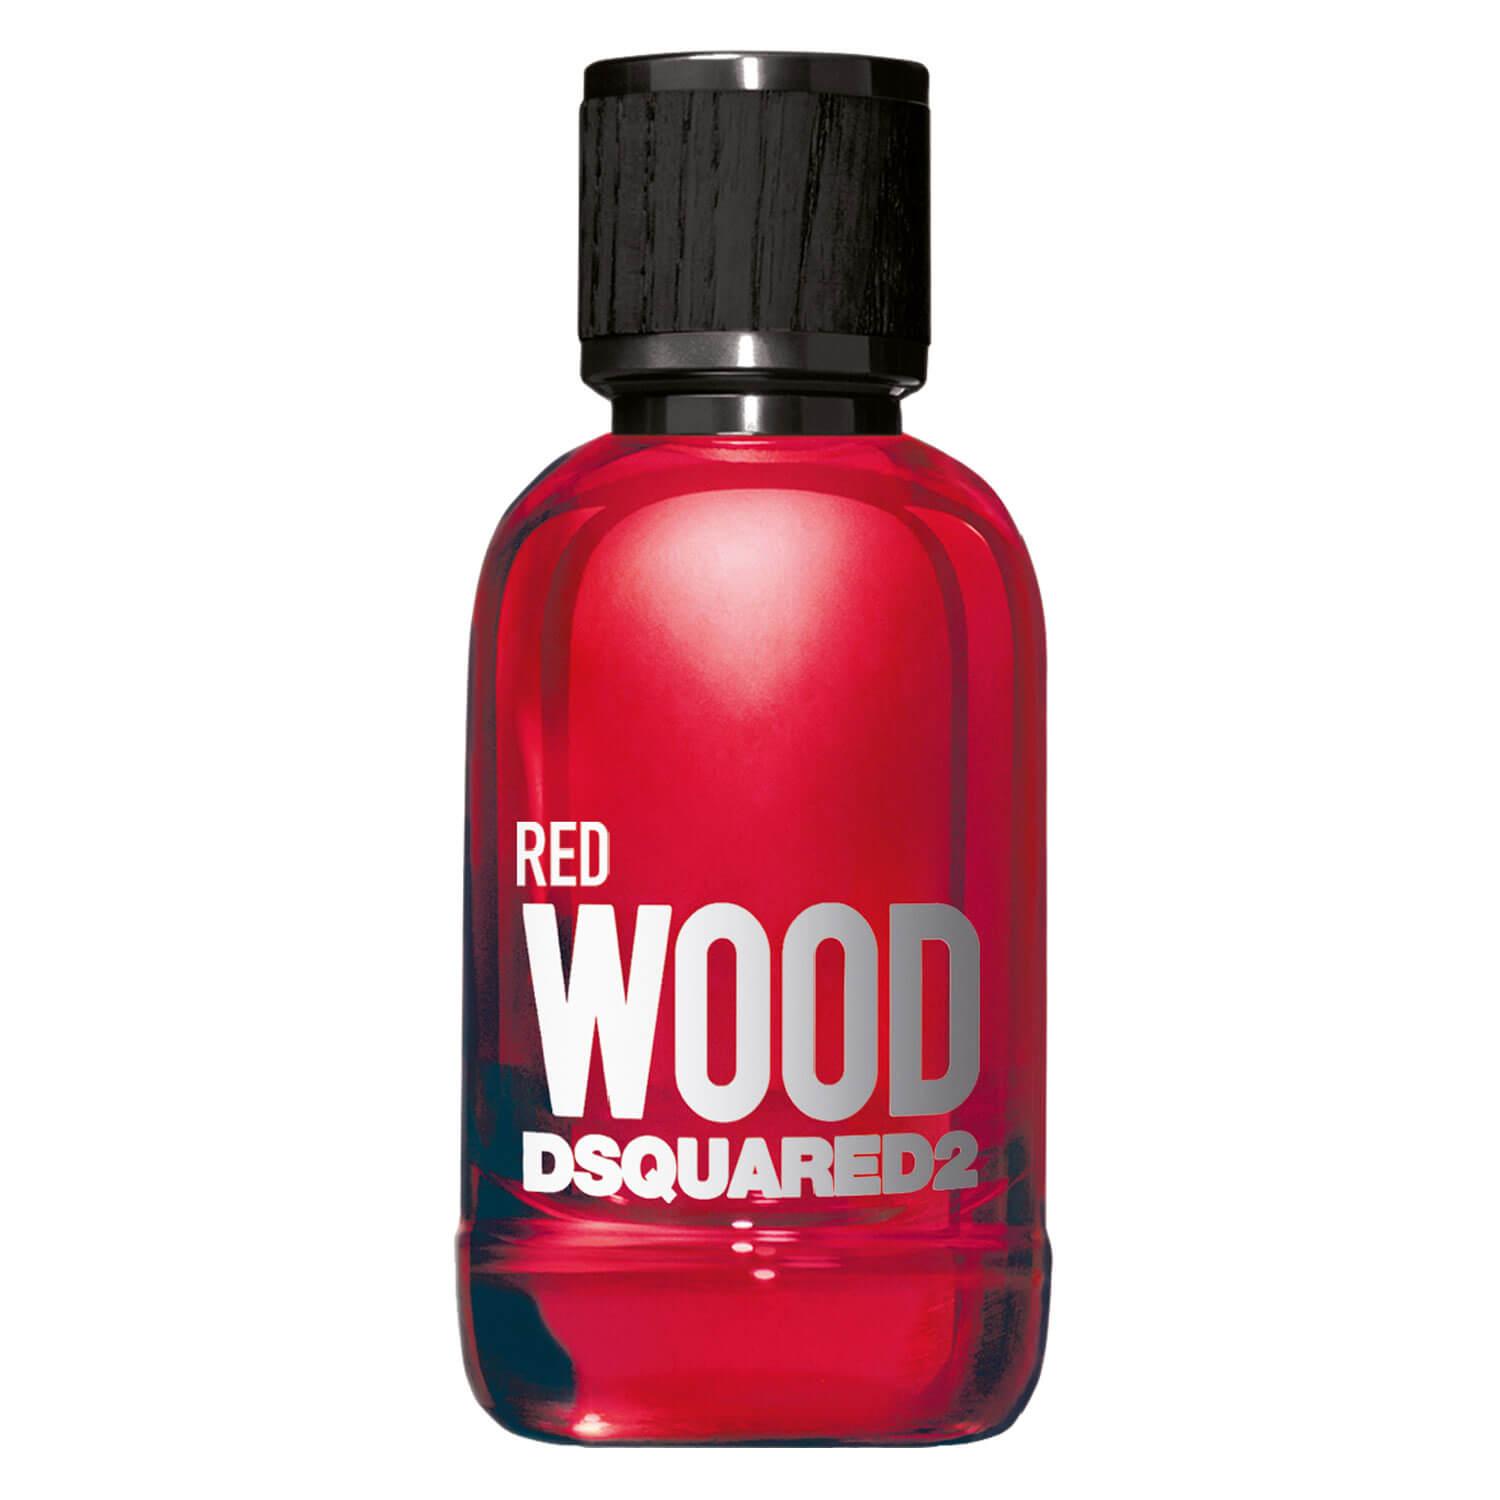 DSQUARED2 WOOD - Red Pour Femme Eau de Toilette